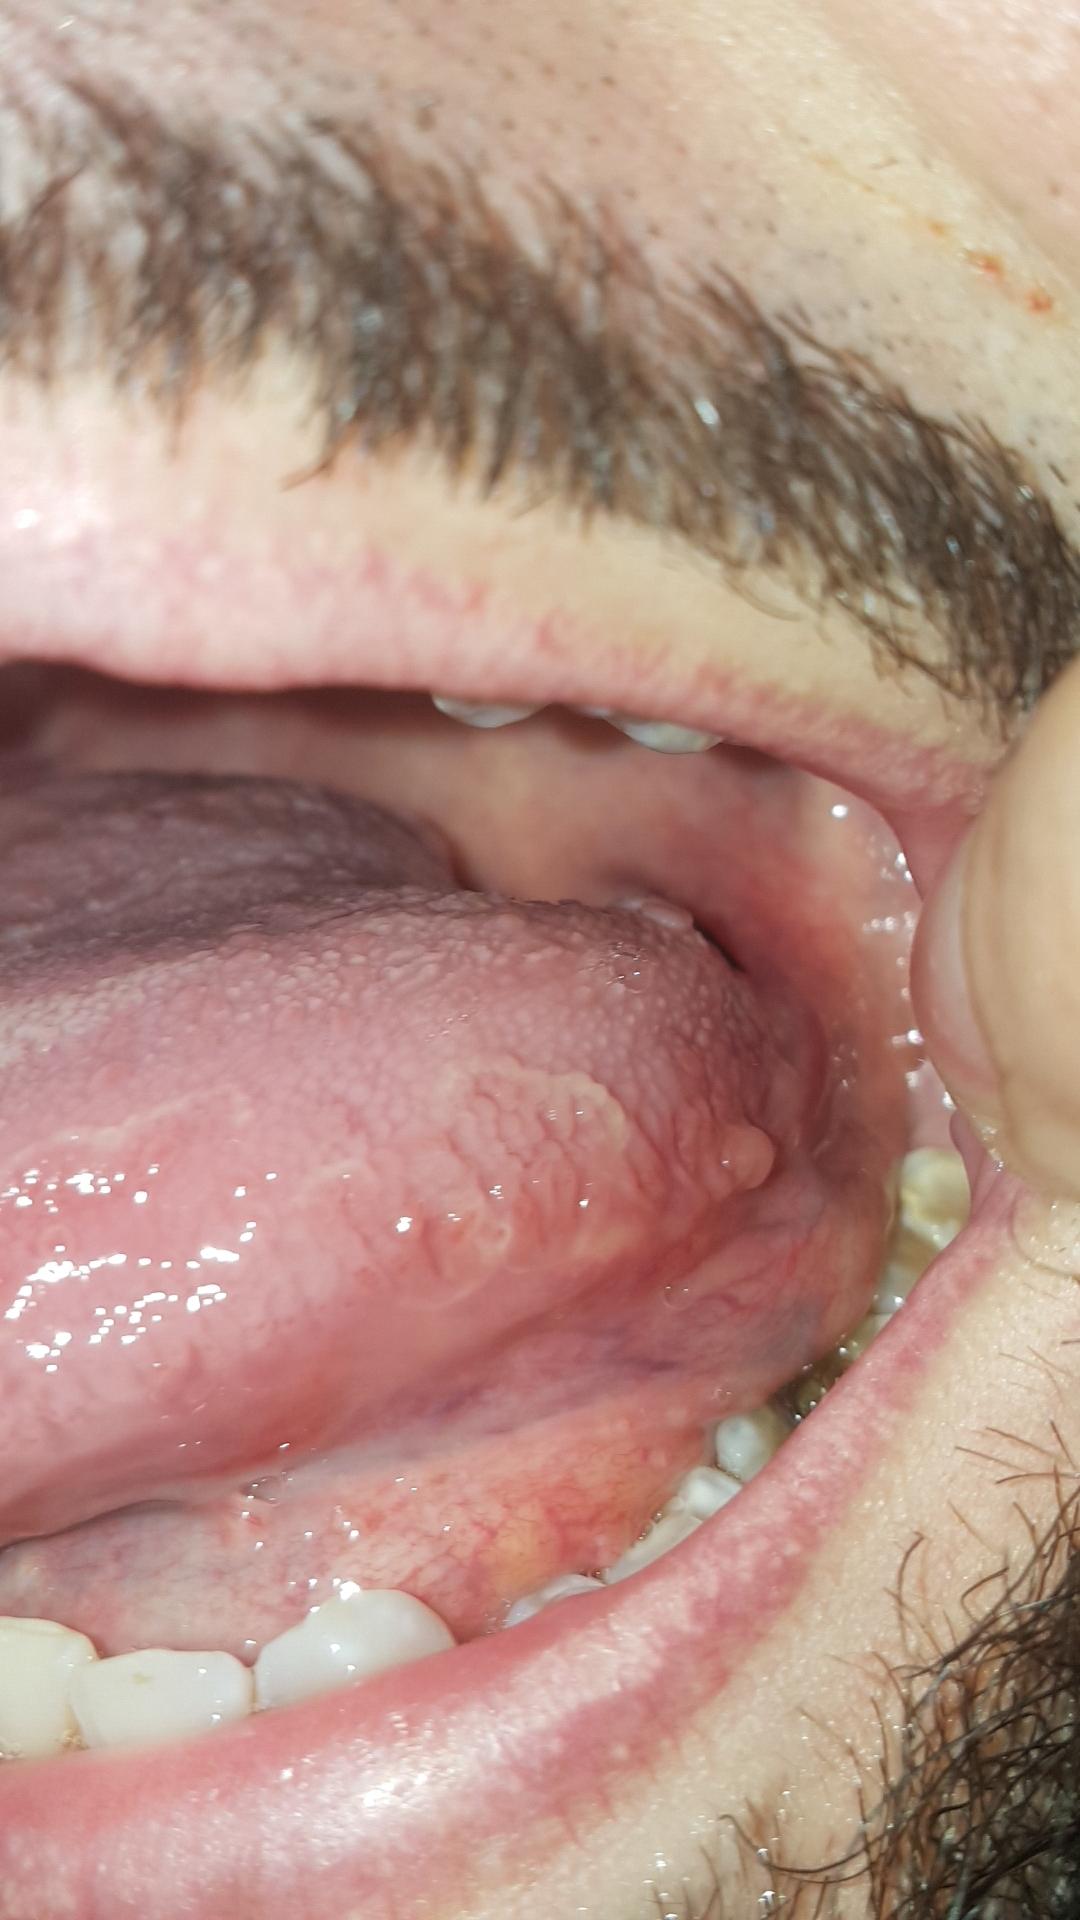 44+ Gutartiger tumor im mund bilder , Was habe ich an meiner zunge? (Mund, Tumor)